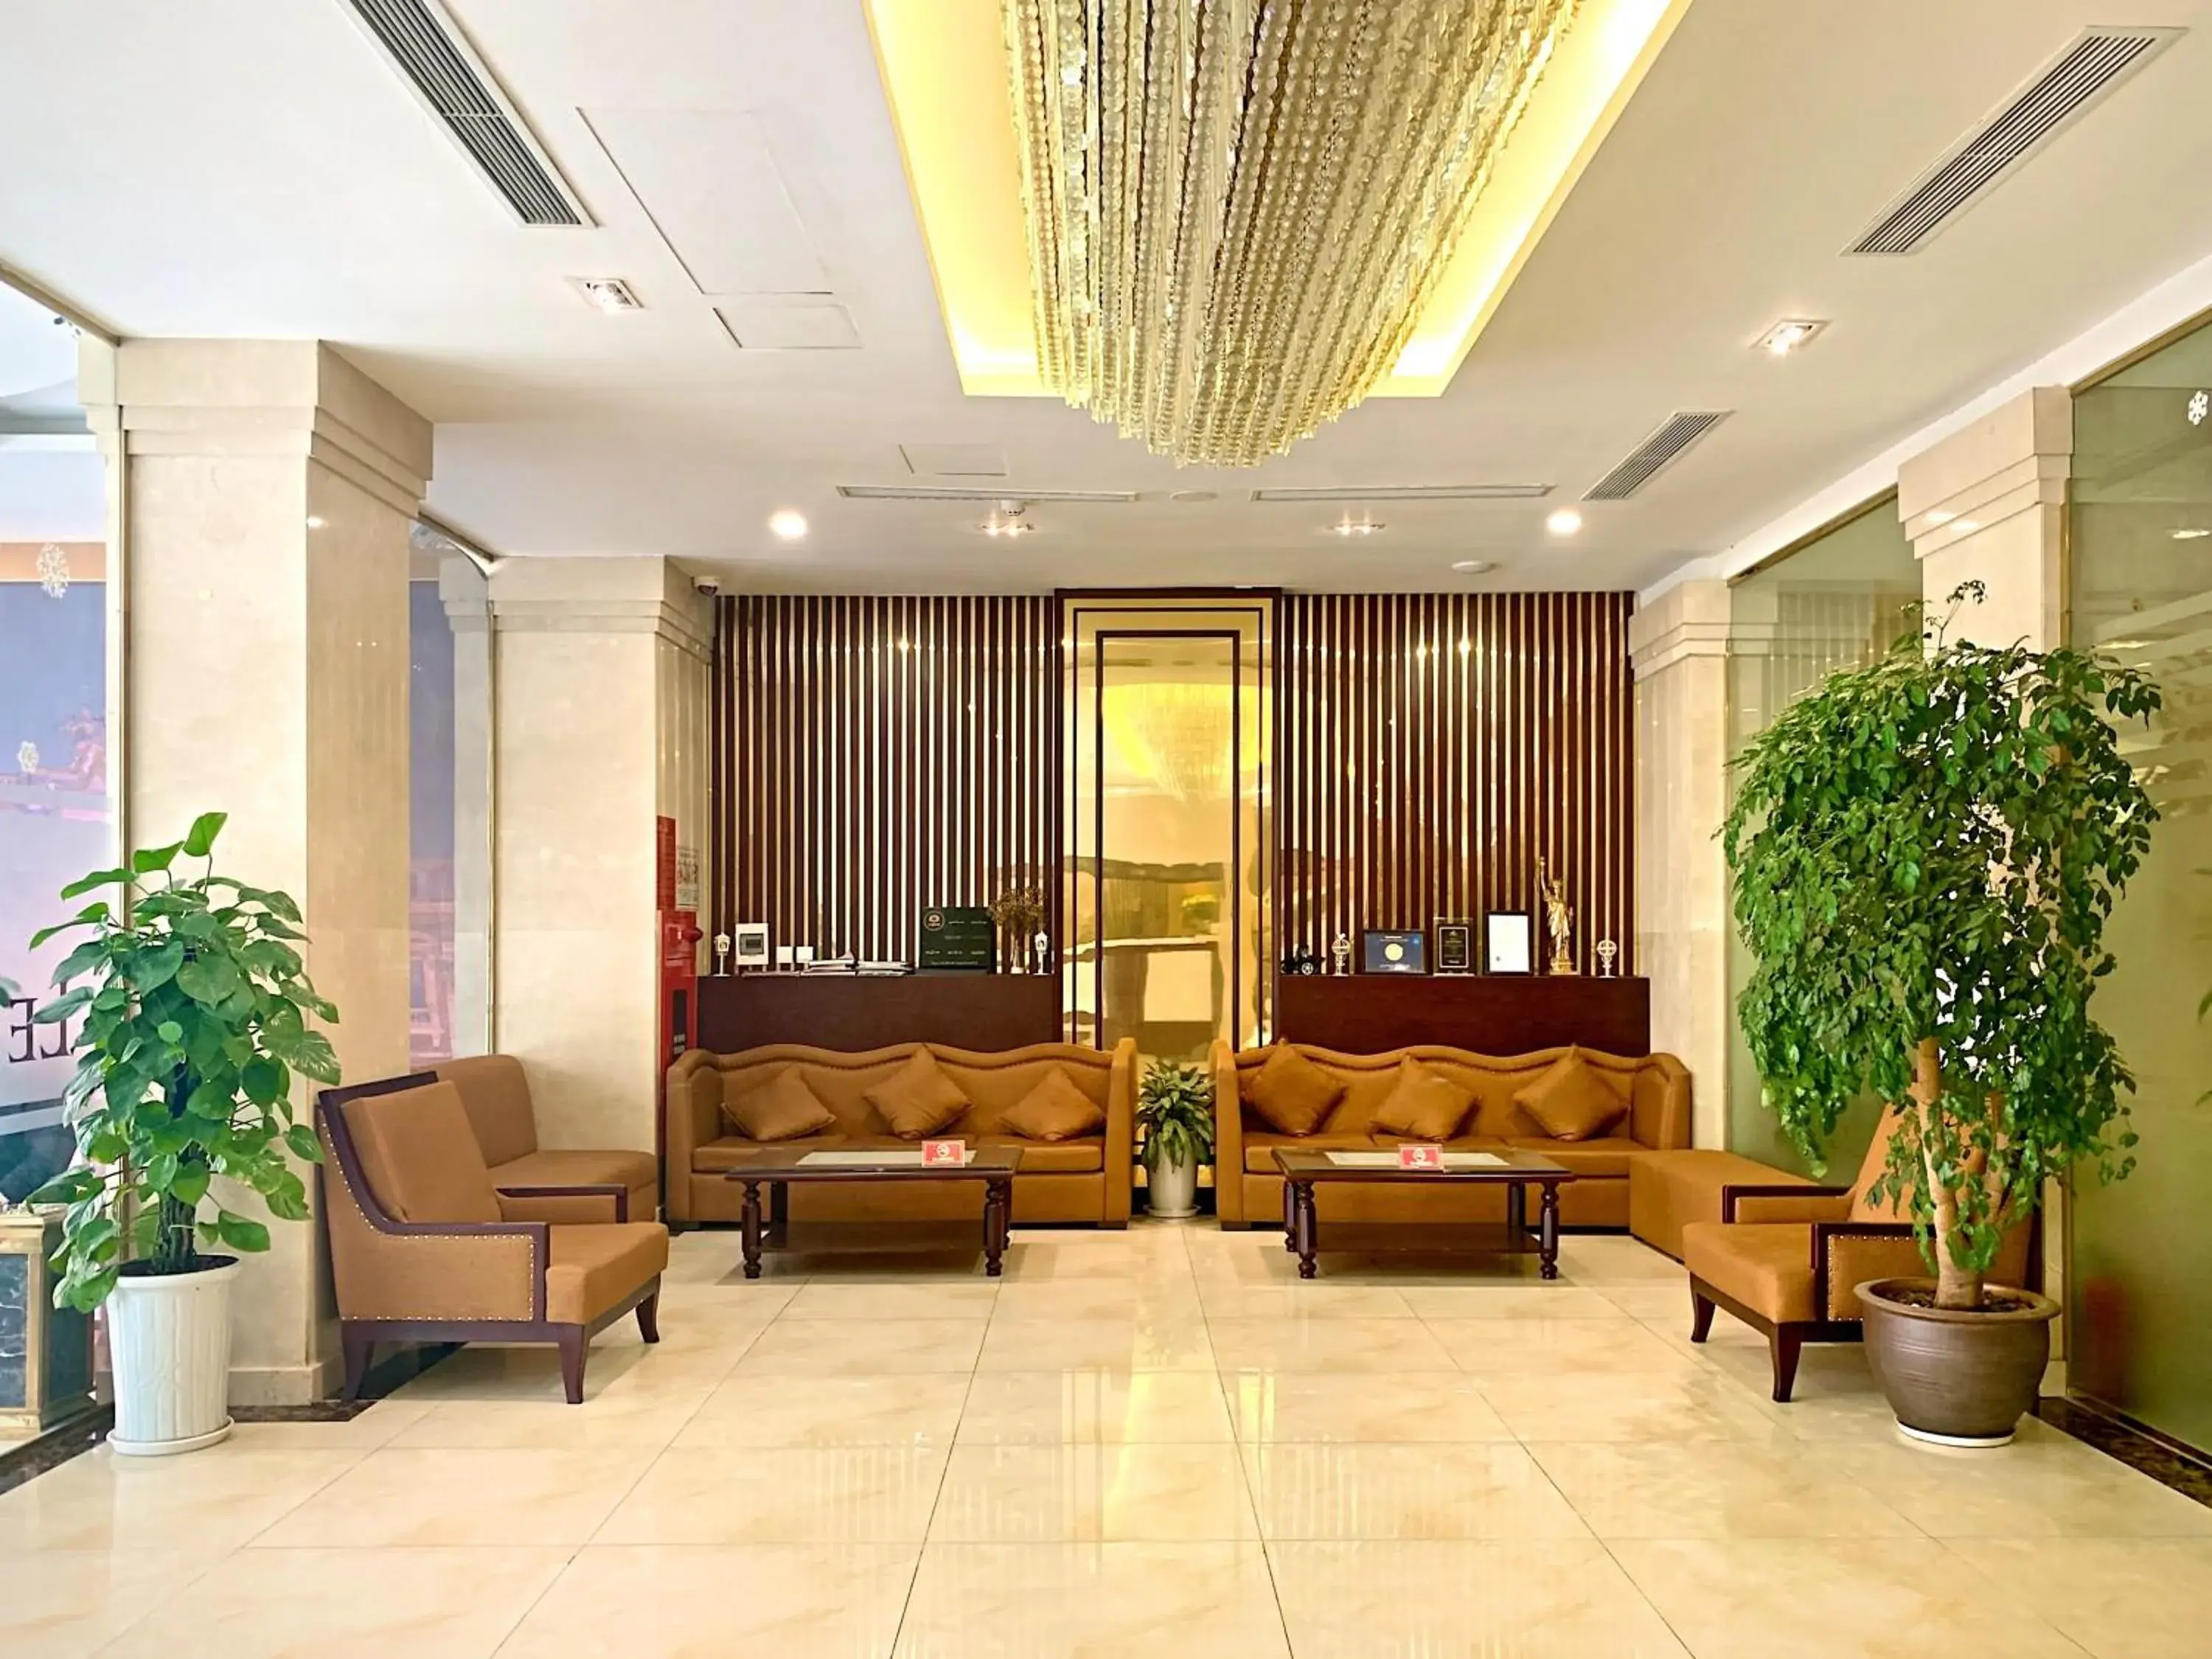 Lobby or reception, Lobby/Reception in Lenid Hotel Tho Nhuom